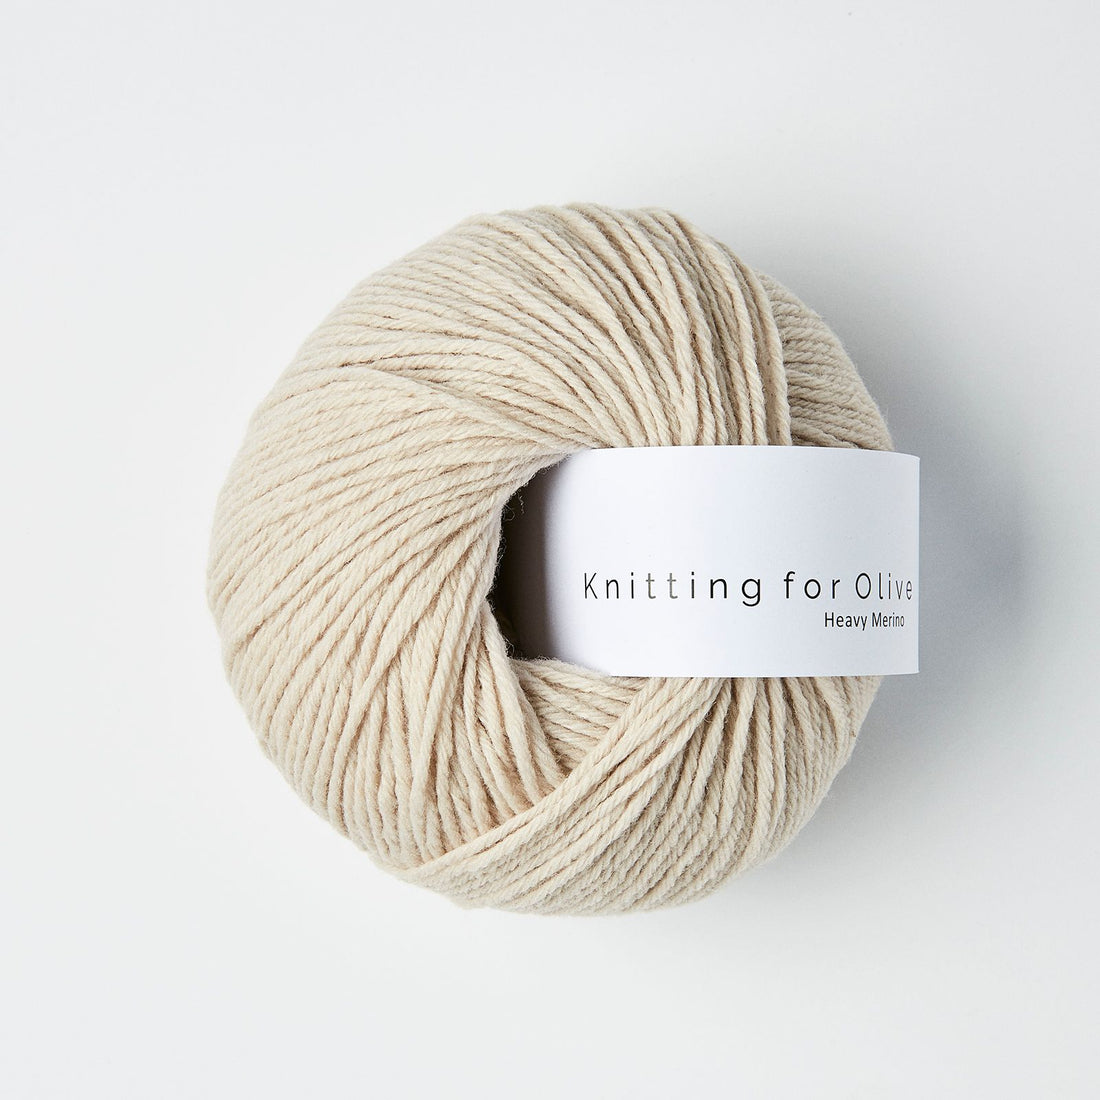 Heavy Merino | Knitting for Olive